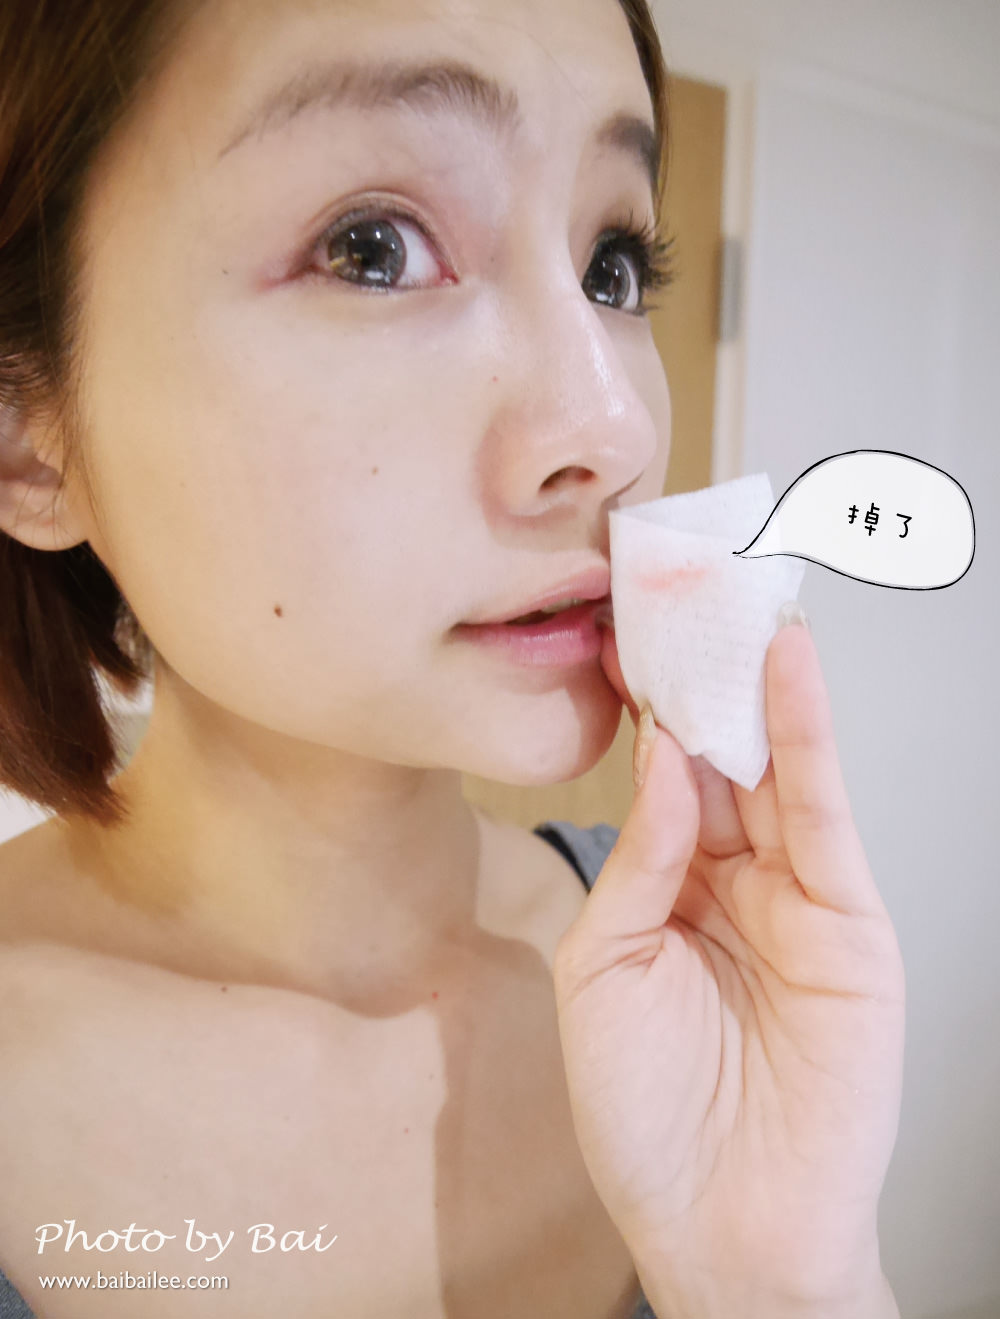 [卸妝] 聖克萊爾全效淨透卸妝水連防水眼妝都可以輕易卸除及接睫毛都能使用溫和卸妝水(附上實測影片)